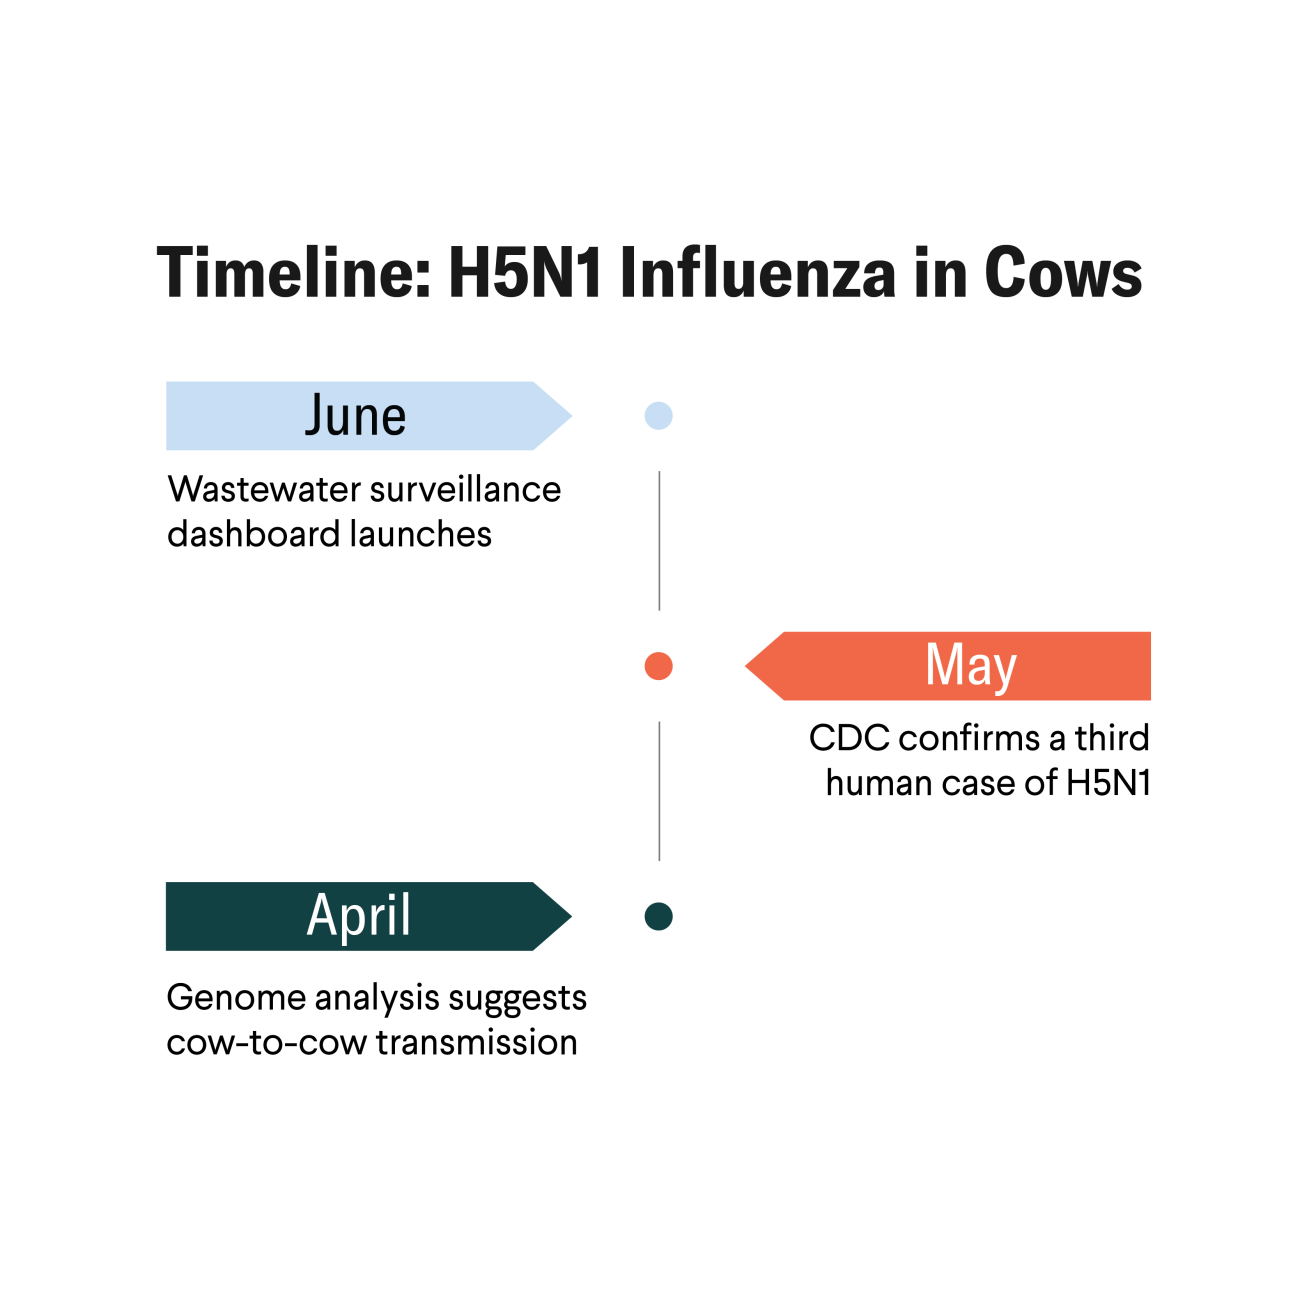 H5N1 Timeline Image